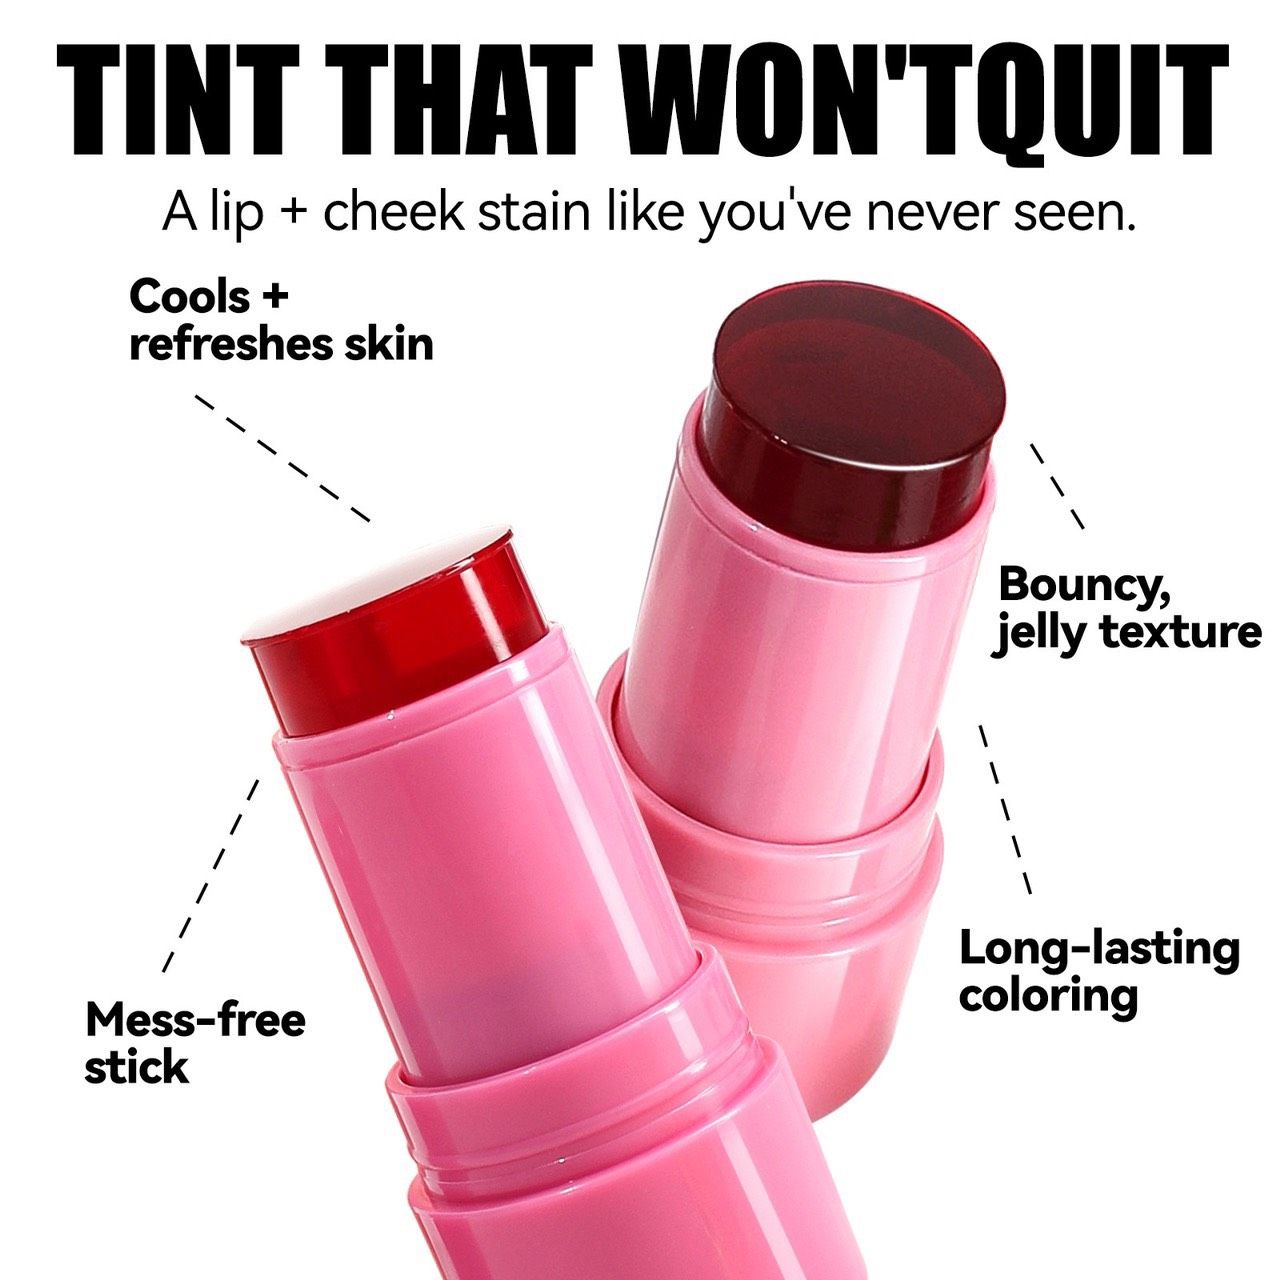  Jelly blush & lip stick má hồng thạch kết hợp với son thỏi vô cùng độc đáo đến từ thương hiệu MLsmile makeup 